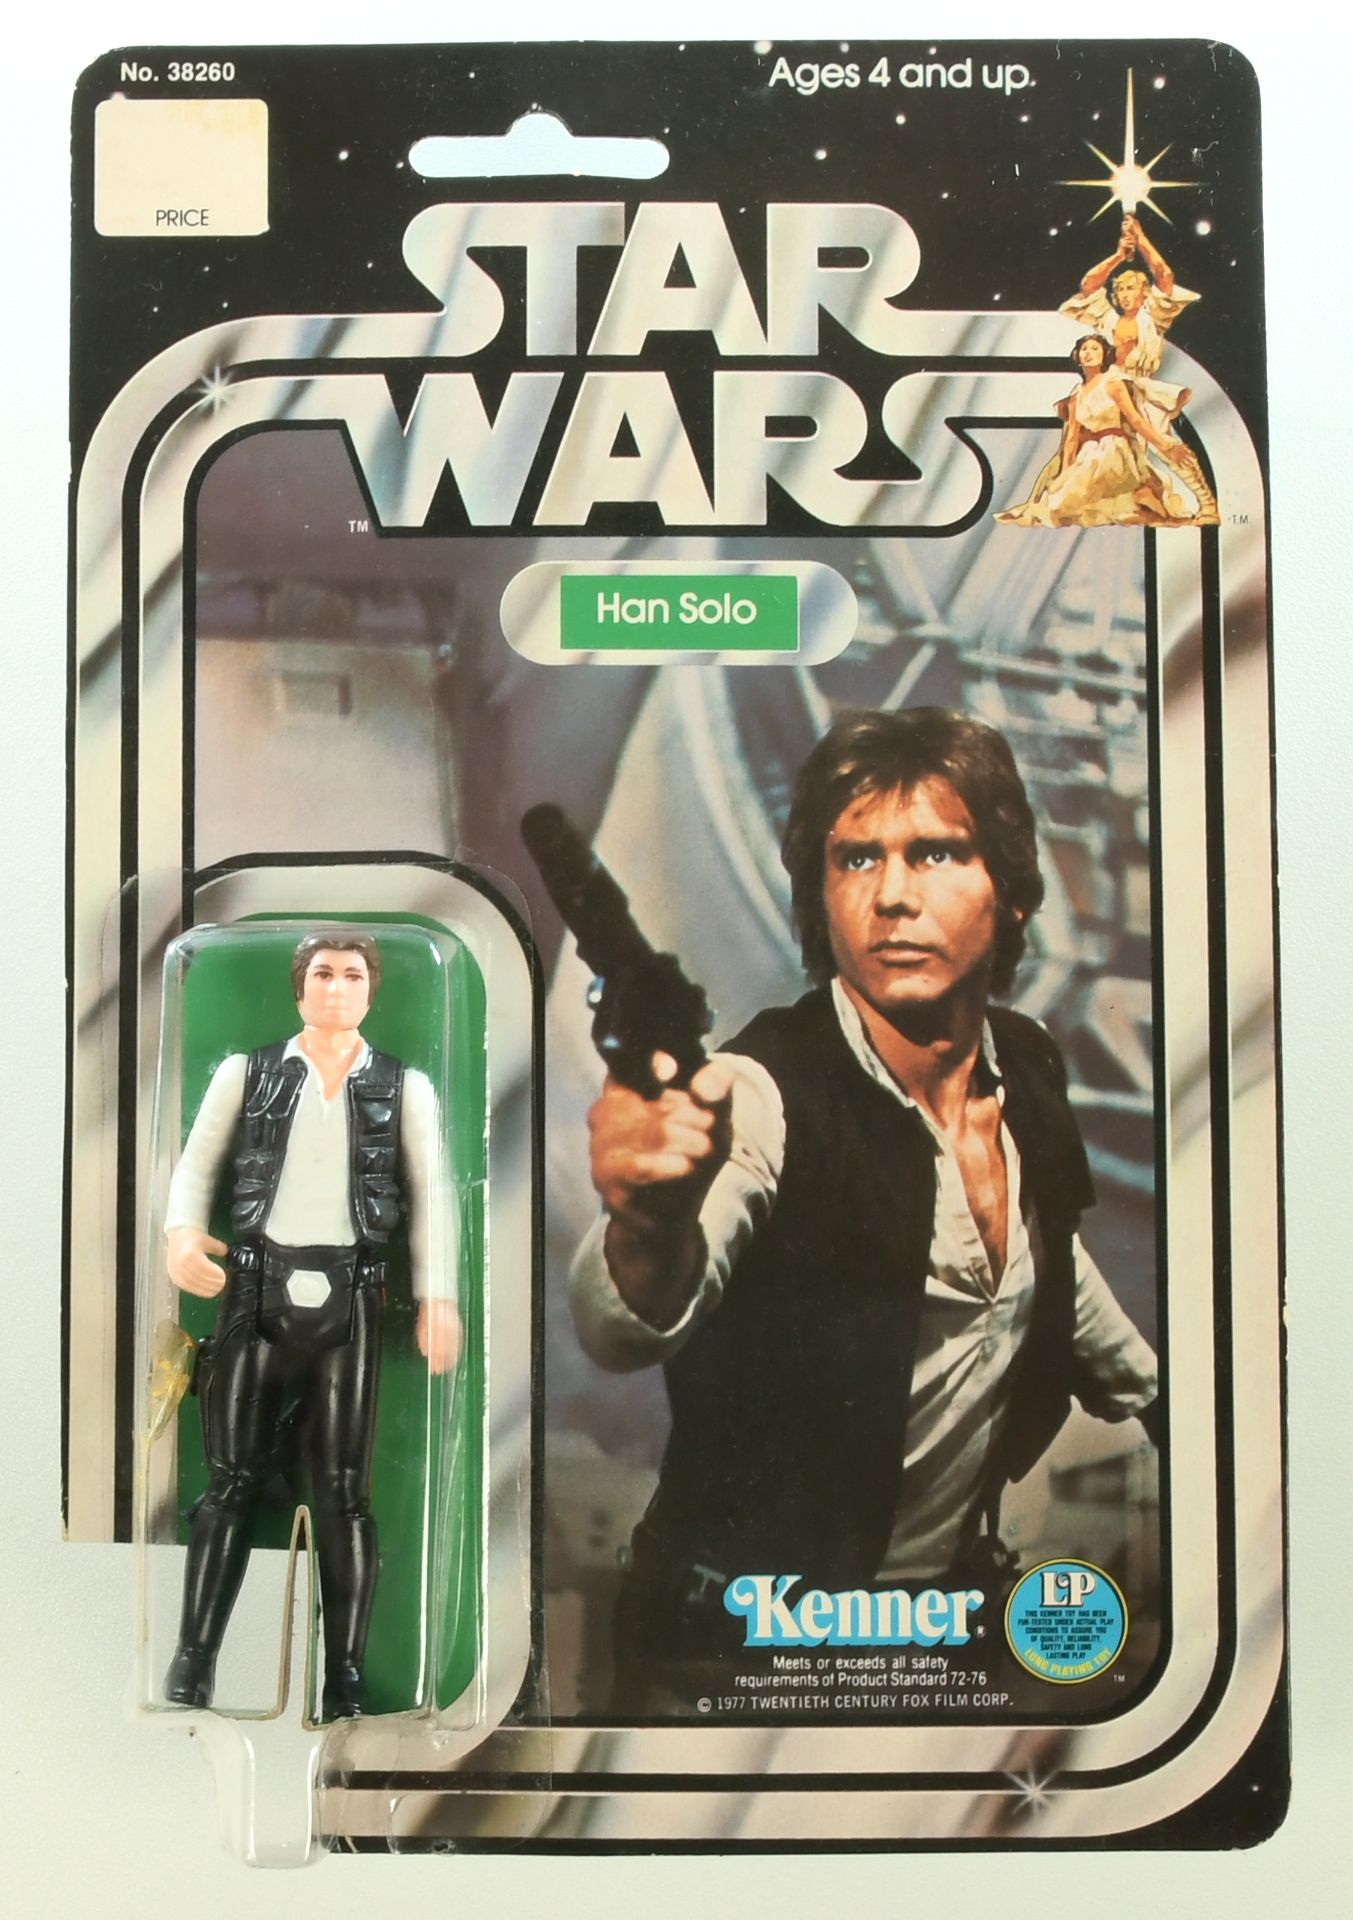 Kenner Star Wars vintage Han Solo 3 3/4" figure